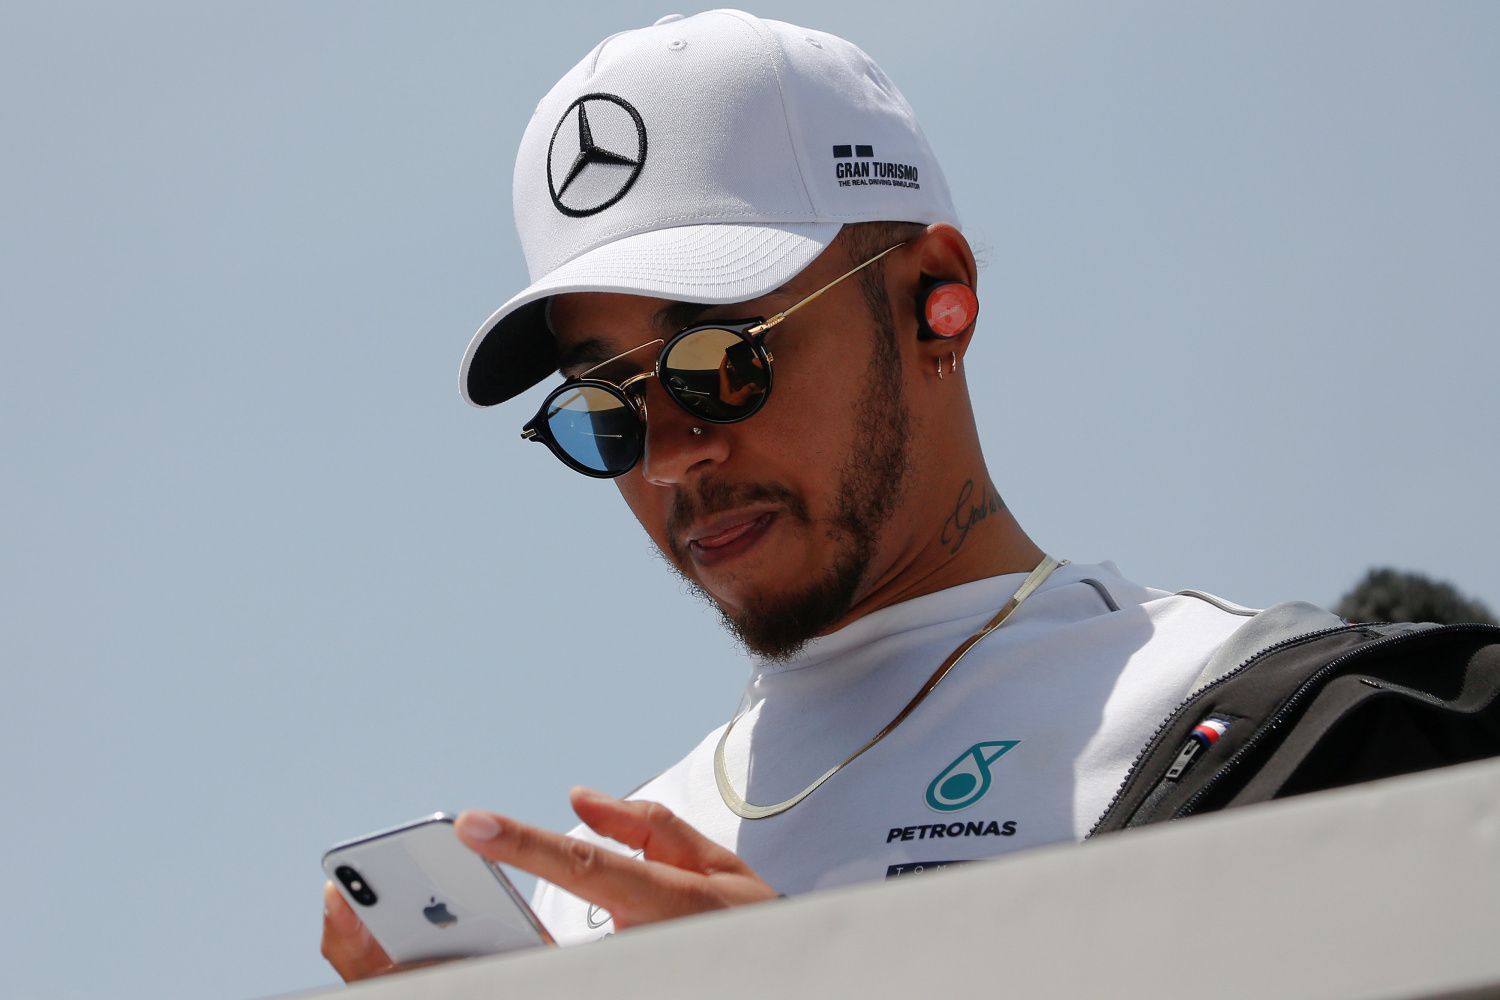 F1 VC Číny 2018: Lewis Hamilton, Mercedes